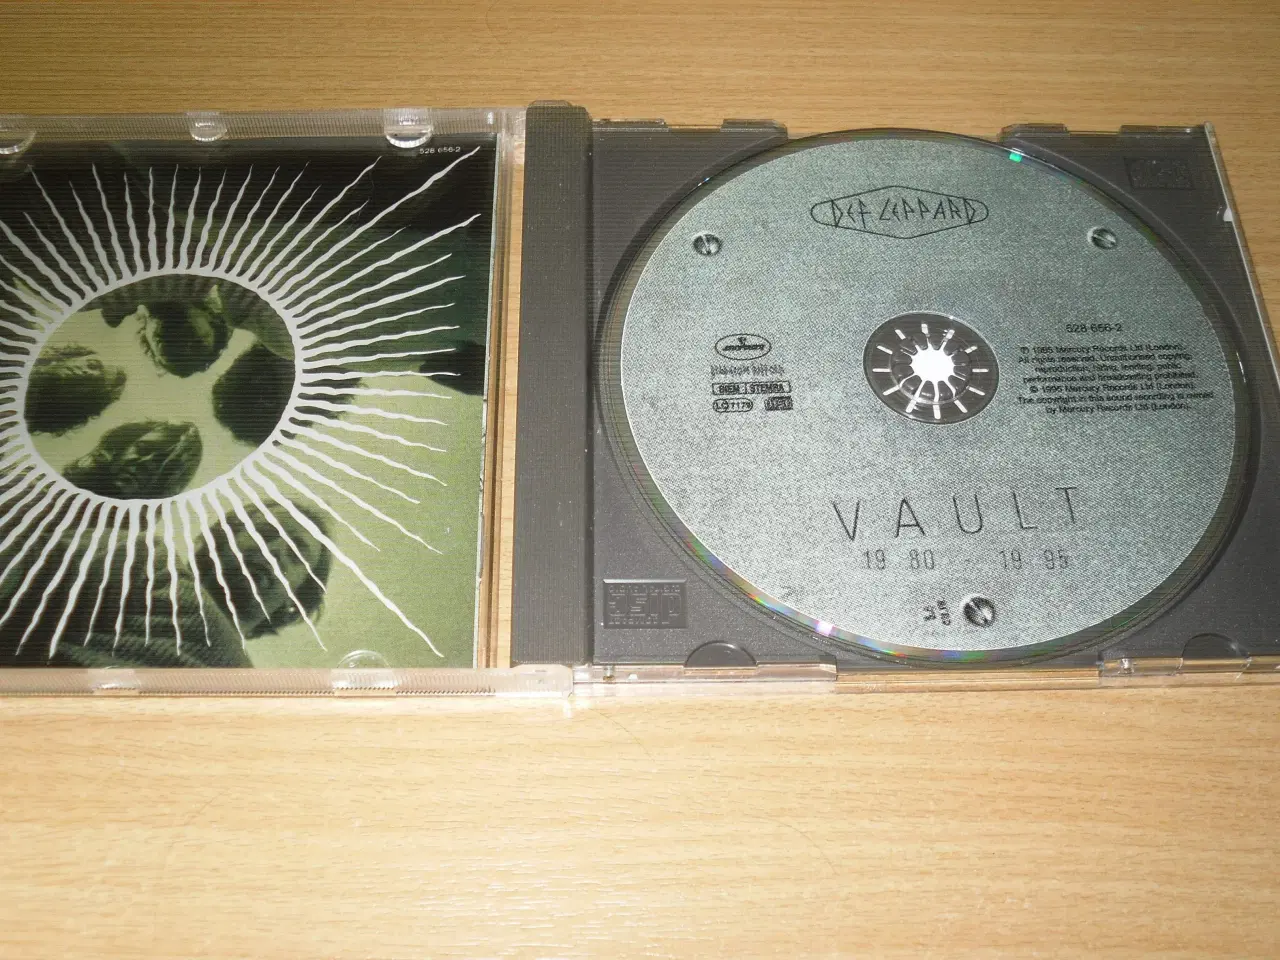 Billede 2 - DEF LEPPARD; Greatest Hits; VAULT; 1995.